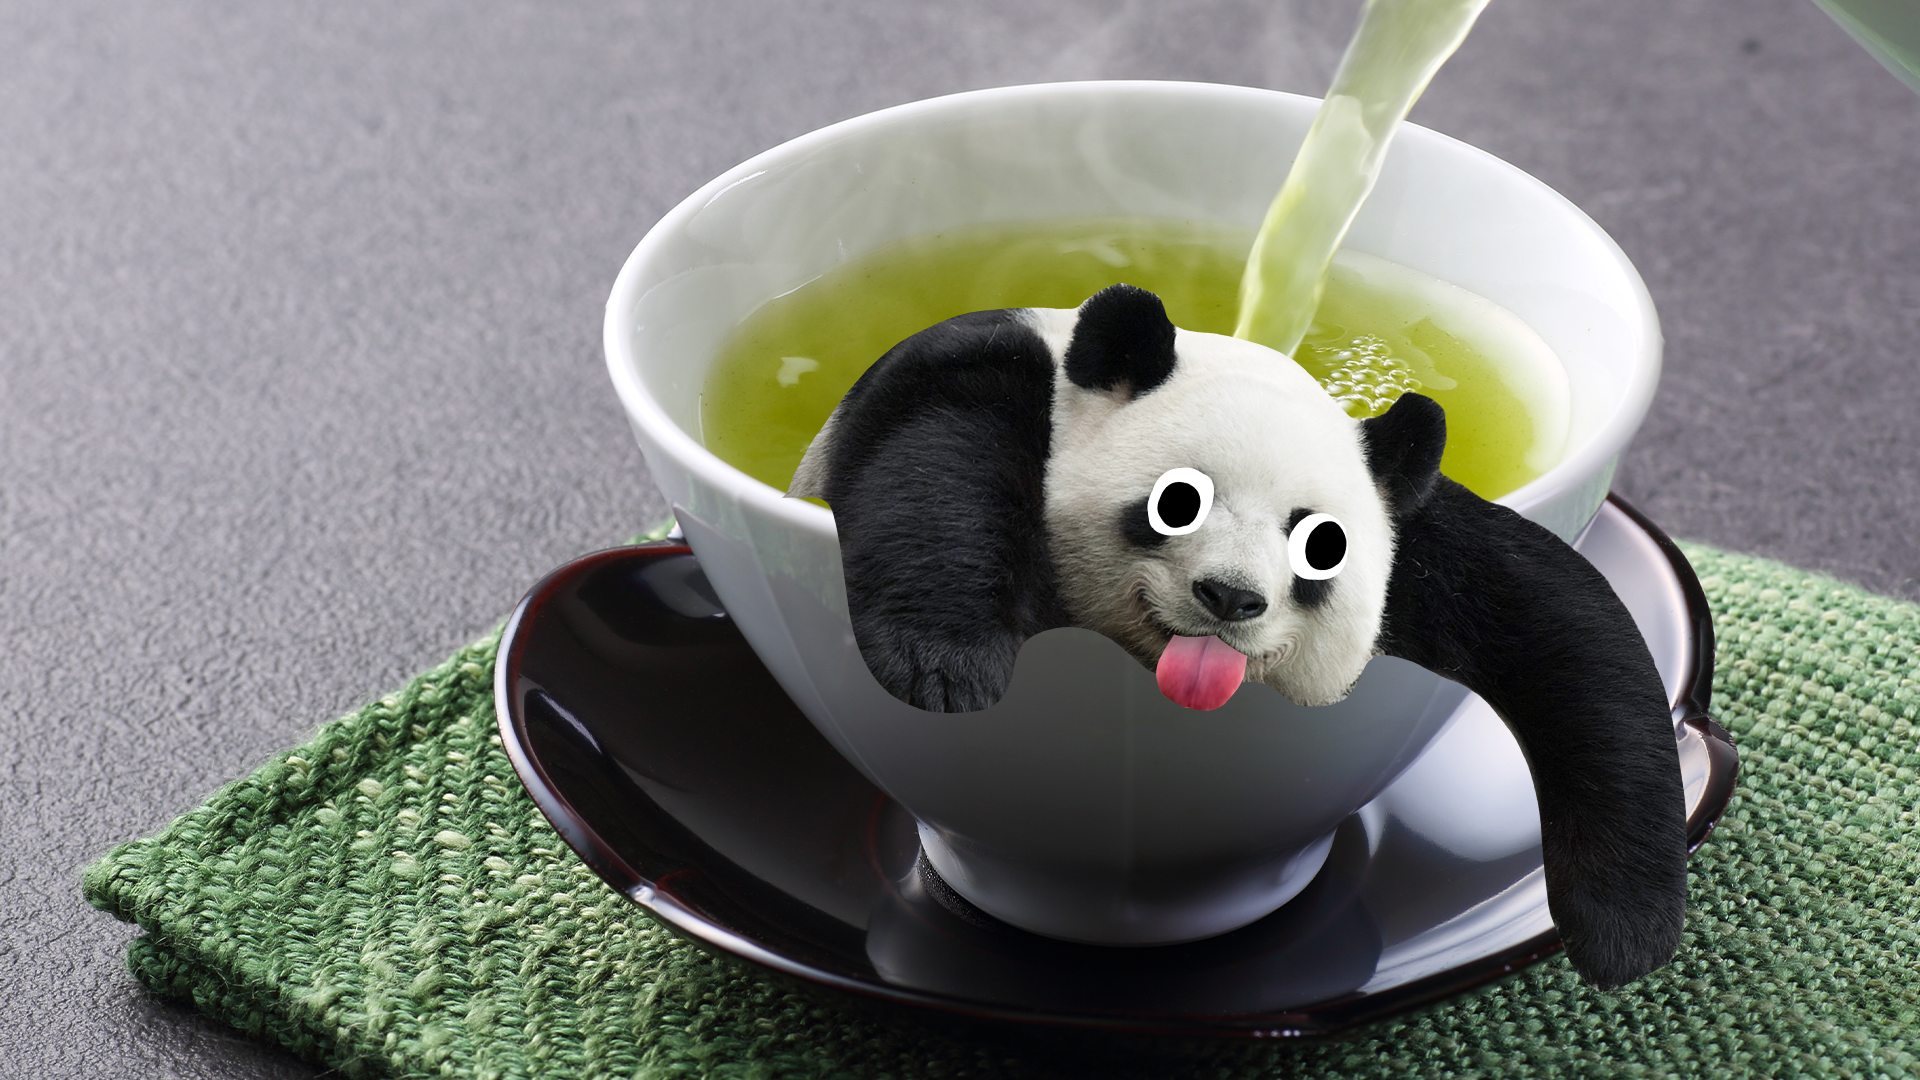 Derpy panda in a cup of tea